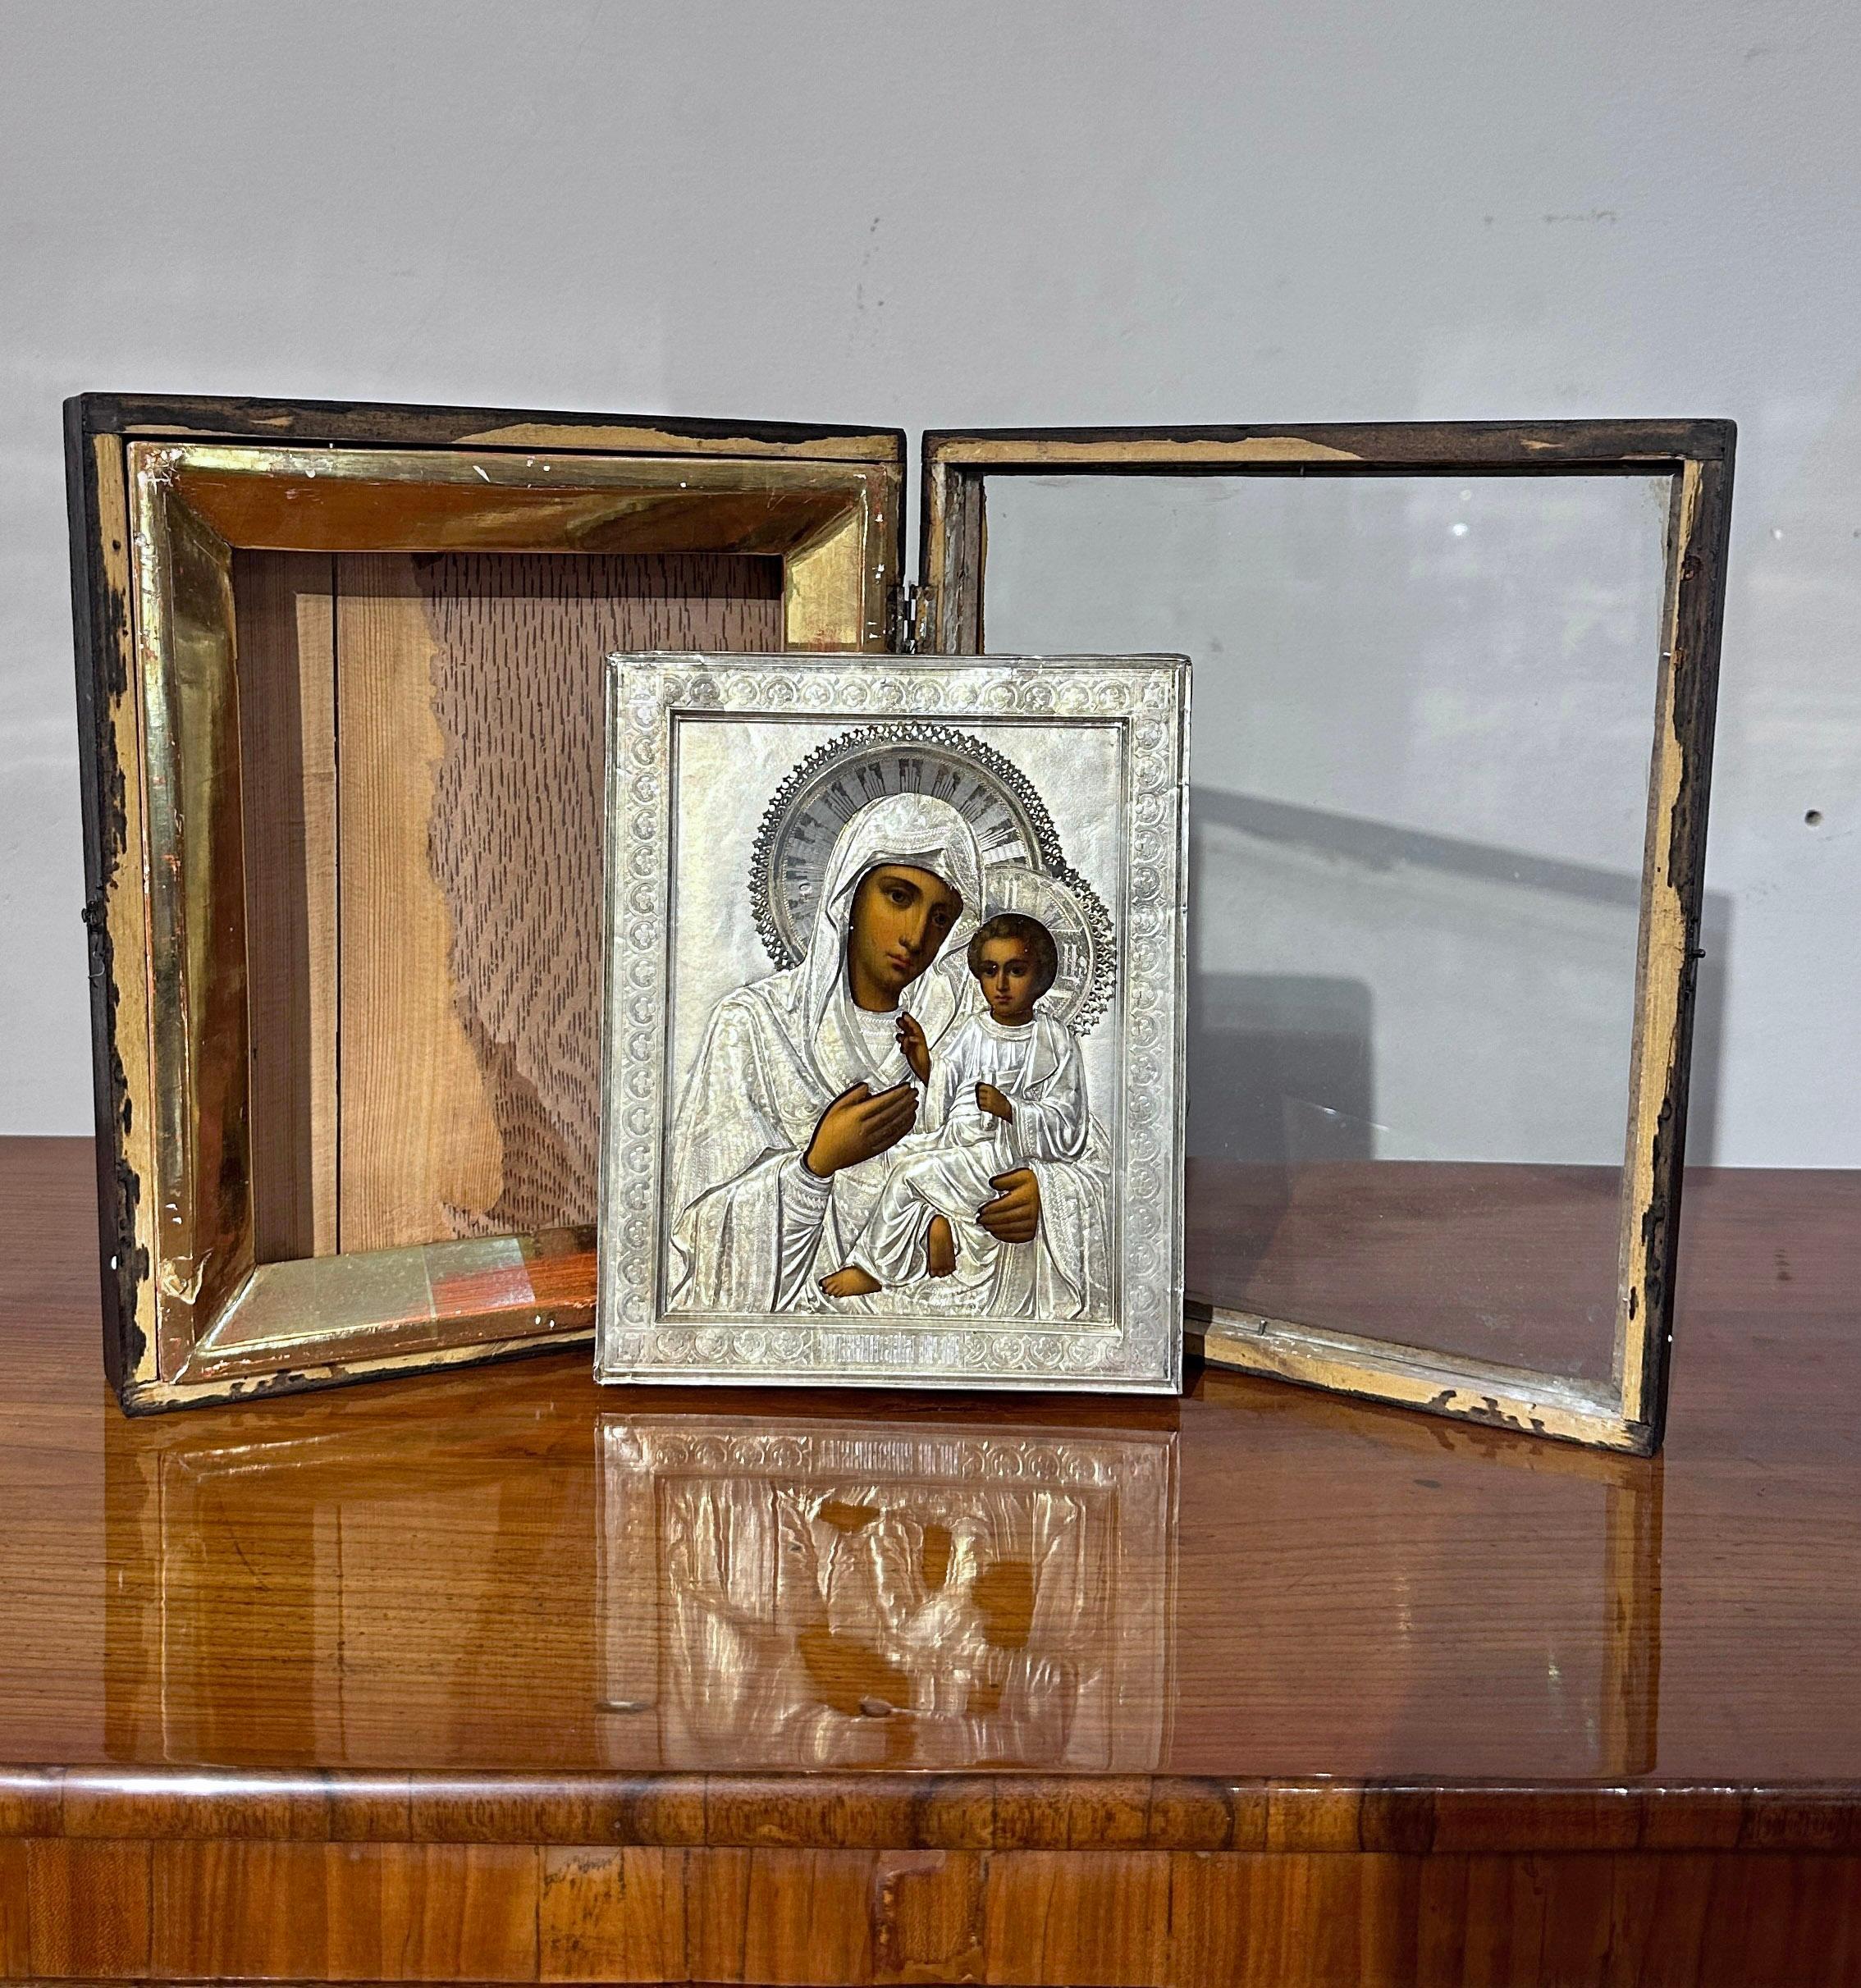 Schöne russische Reise-Ikone in Öl auf Holztafel gemalt, mit einer raffinierten Silberlanzette. Die Madonna und das Kind sind mit großer Kunstfertigkeit dargestellt und folgen dem traditionellen Stil orthodoxer Ikonen. Ihre Kleidung und ihr